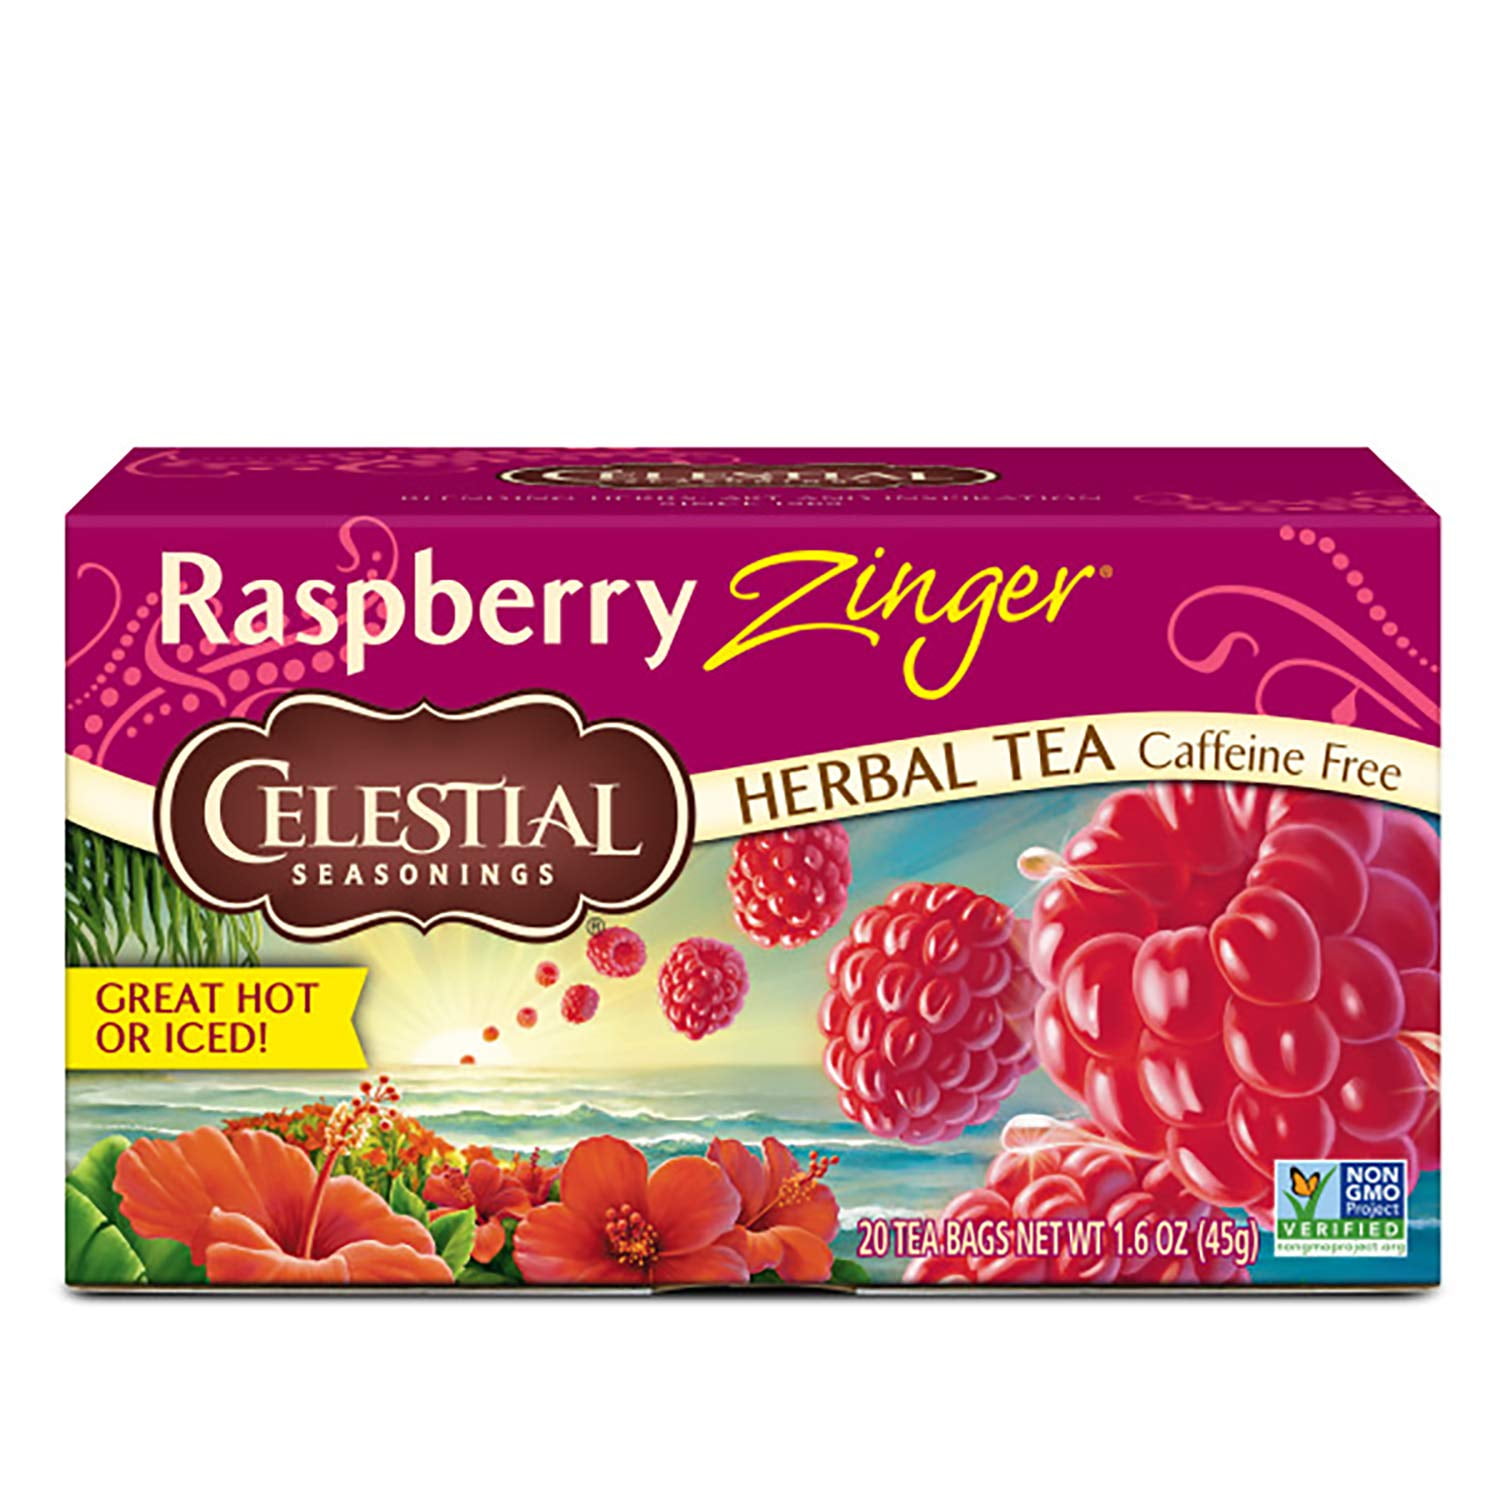 defekt Dwelling røgelse Celestial Seasonings, Herbal Tea, Caffeine Free, Raspberry Zinger, 20 Tea  Bags, 1.6 oz(pack of 6) - Walmart.com